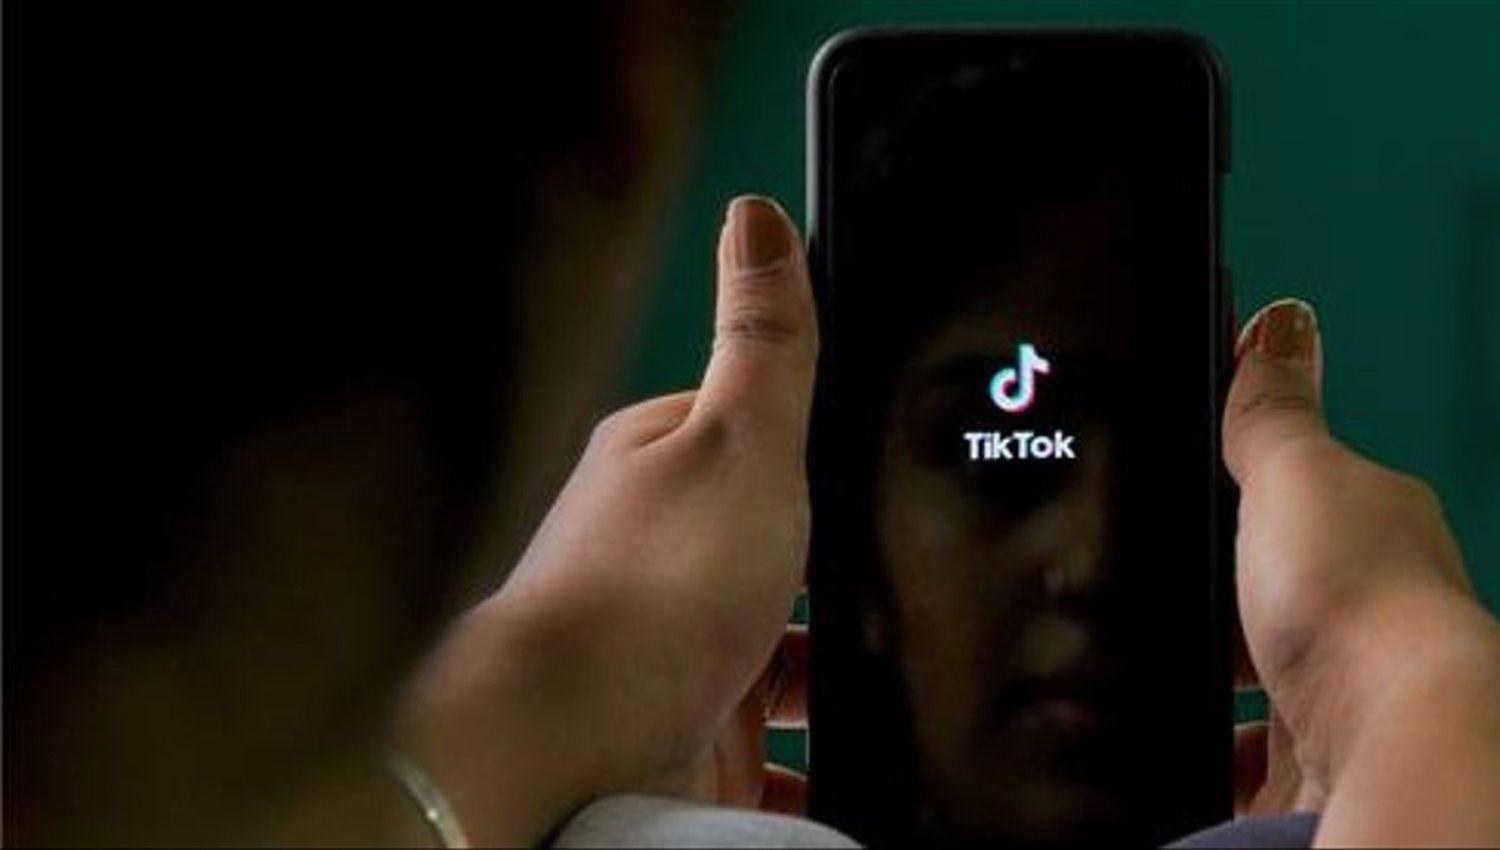 Descubren grave falla en TikTok que expuso los teleacutefonos de los usuarios